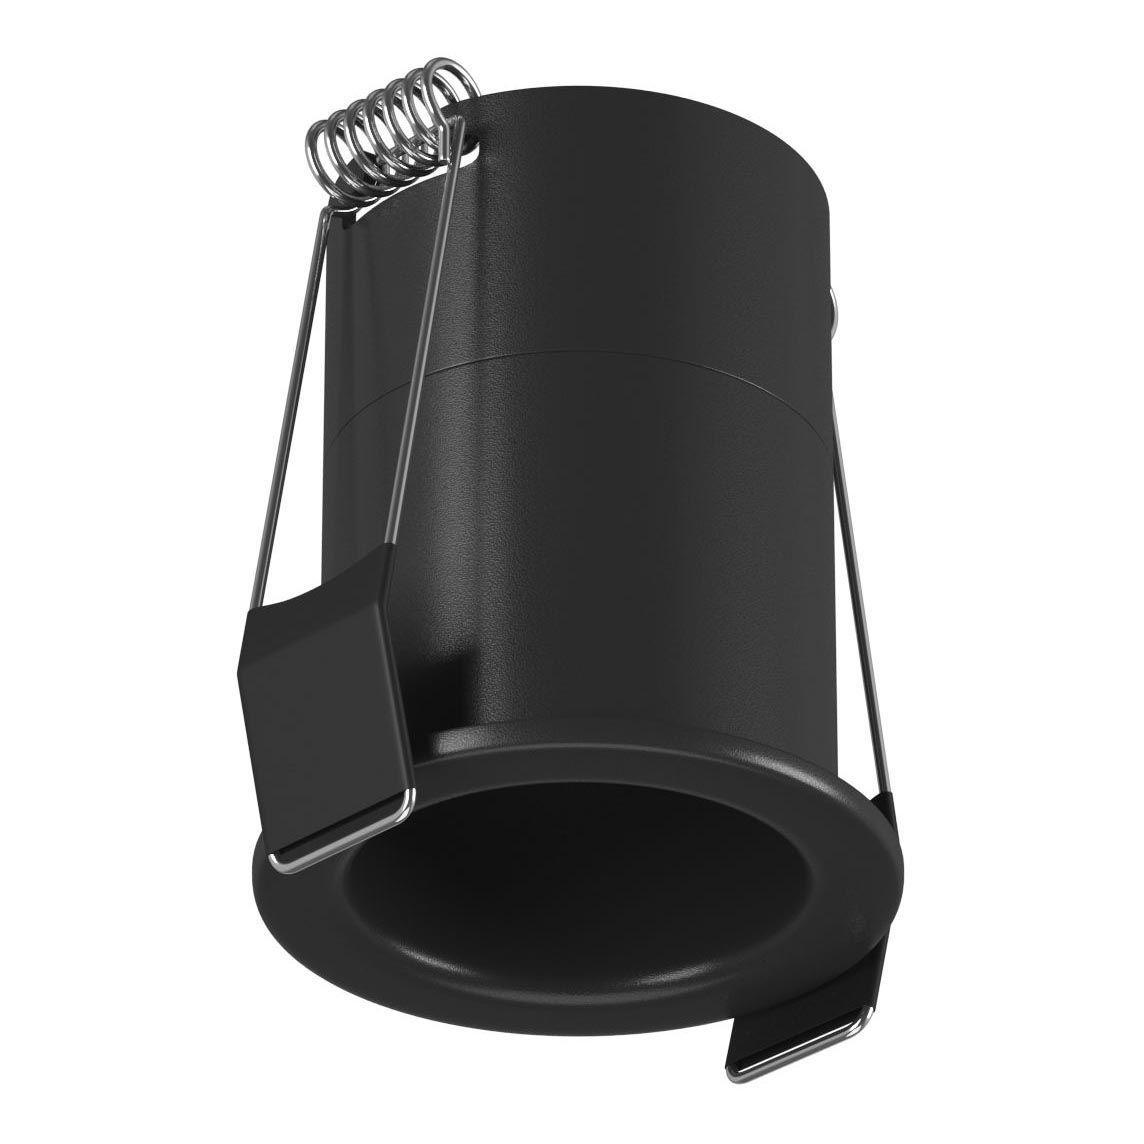 Встраиваемый светодиодный светильник DesignLed DL-A004-7-BL-WW 006639 рюкзак peak design travel 30l чёрный btr 30 bk 1